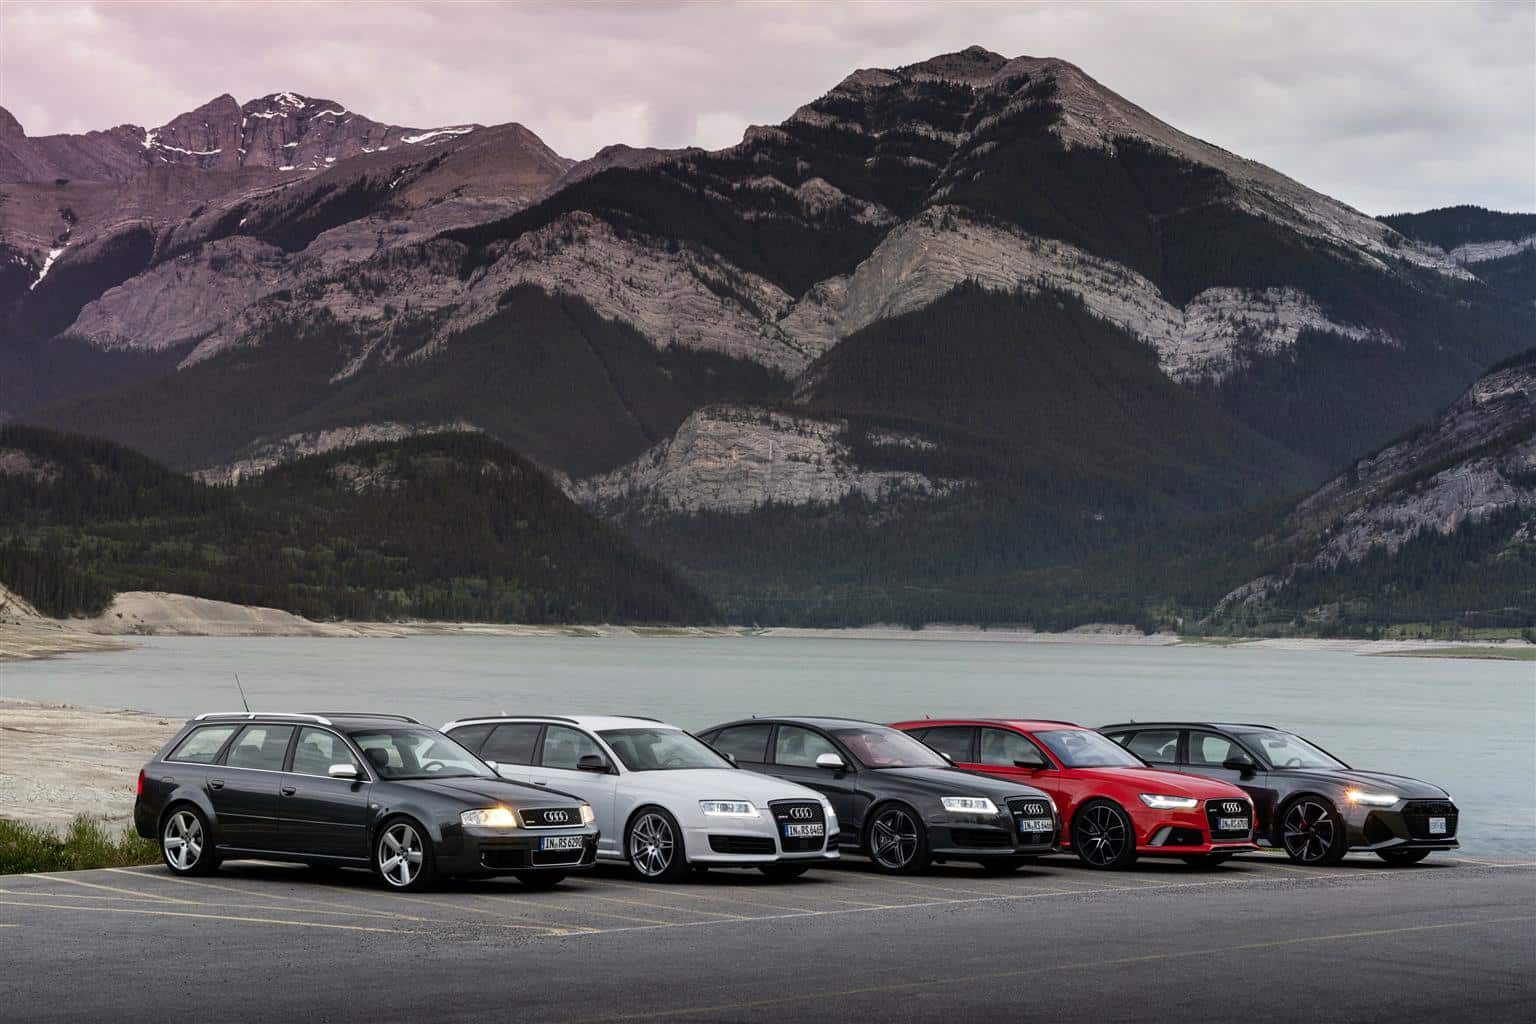 Le generazioni di Audi RS6 a confronto - Crediti foto: Audi